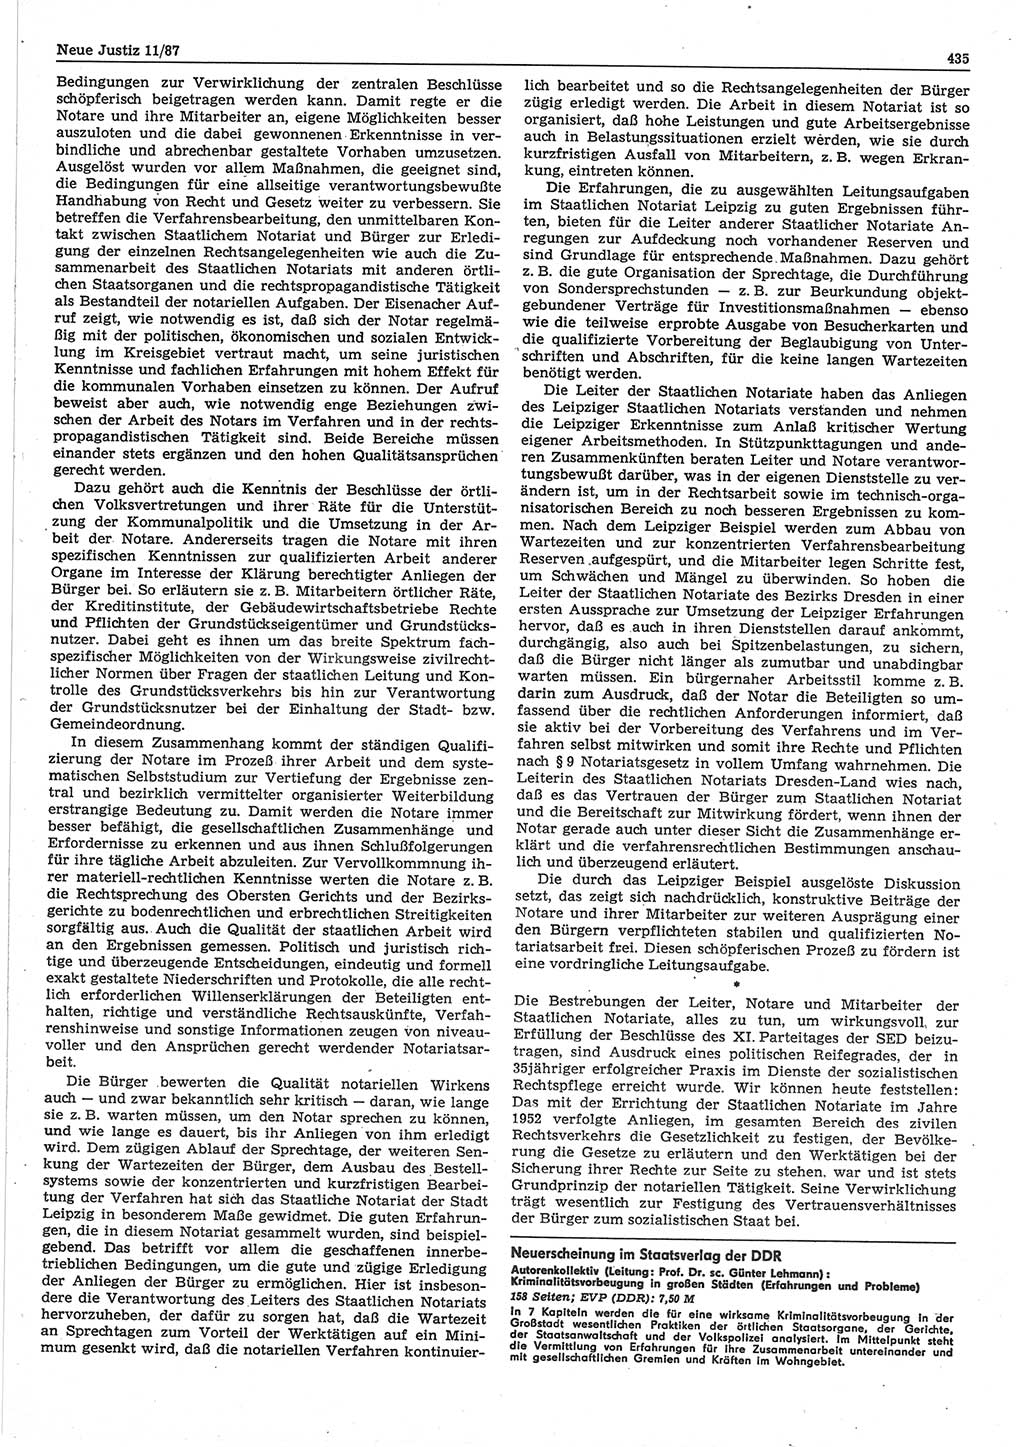 Neue Justiz (NJ), Zeitschrift für sozialistisches Recht und Gesetzlichkeit [Deutsche Demokratische Republik (DDR)], 41. Jahrgang 1987, Seite 435 (NJ DDR 1987, S. 435)